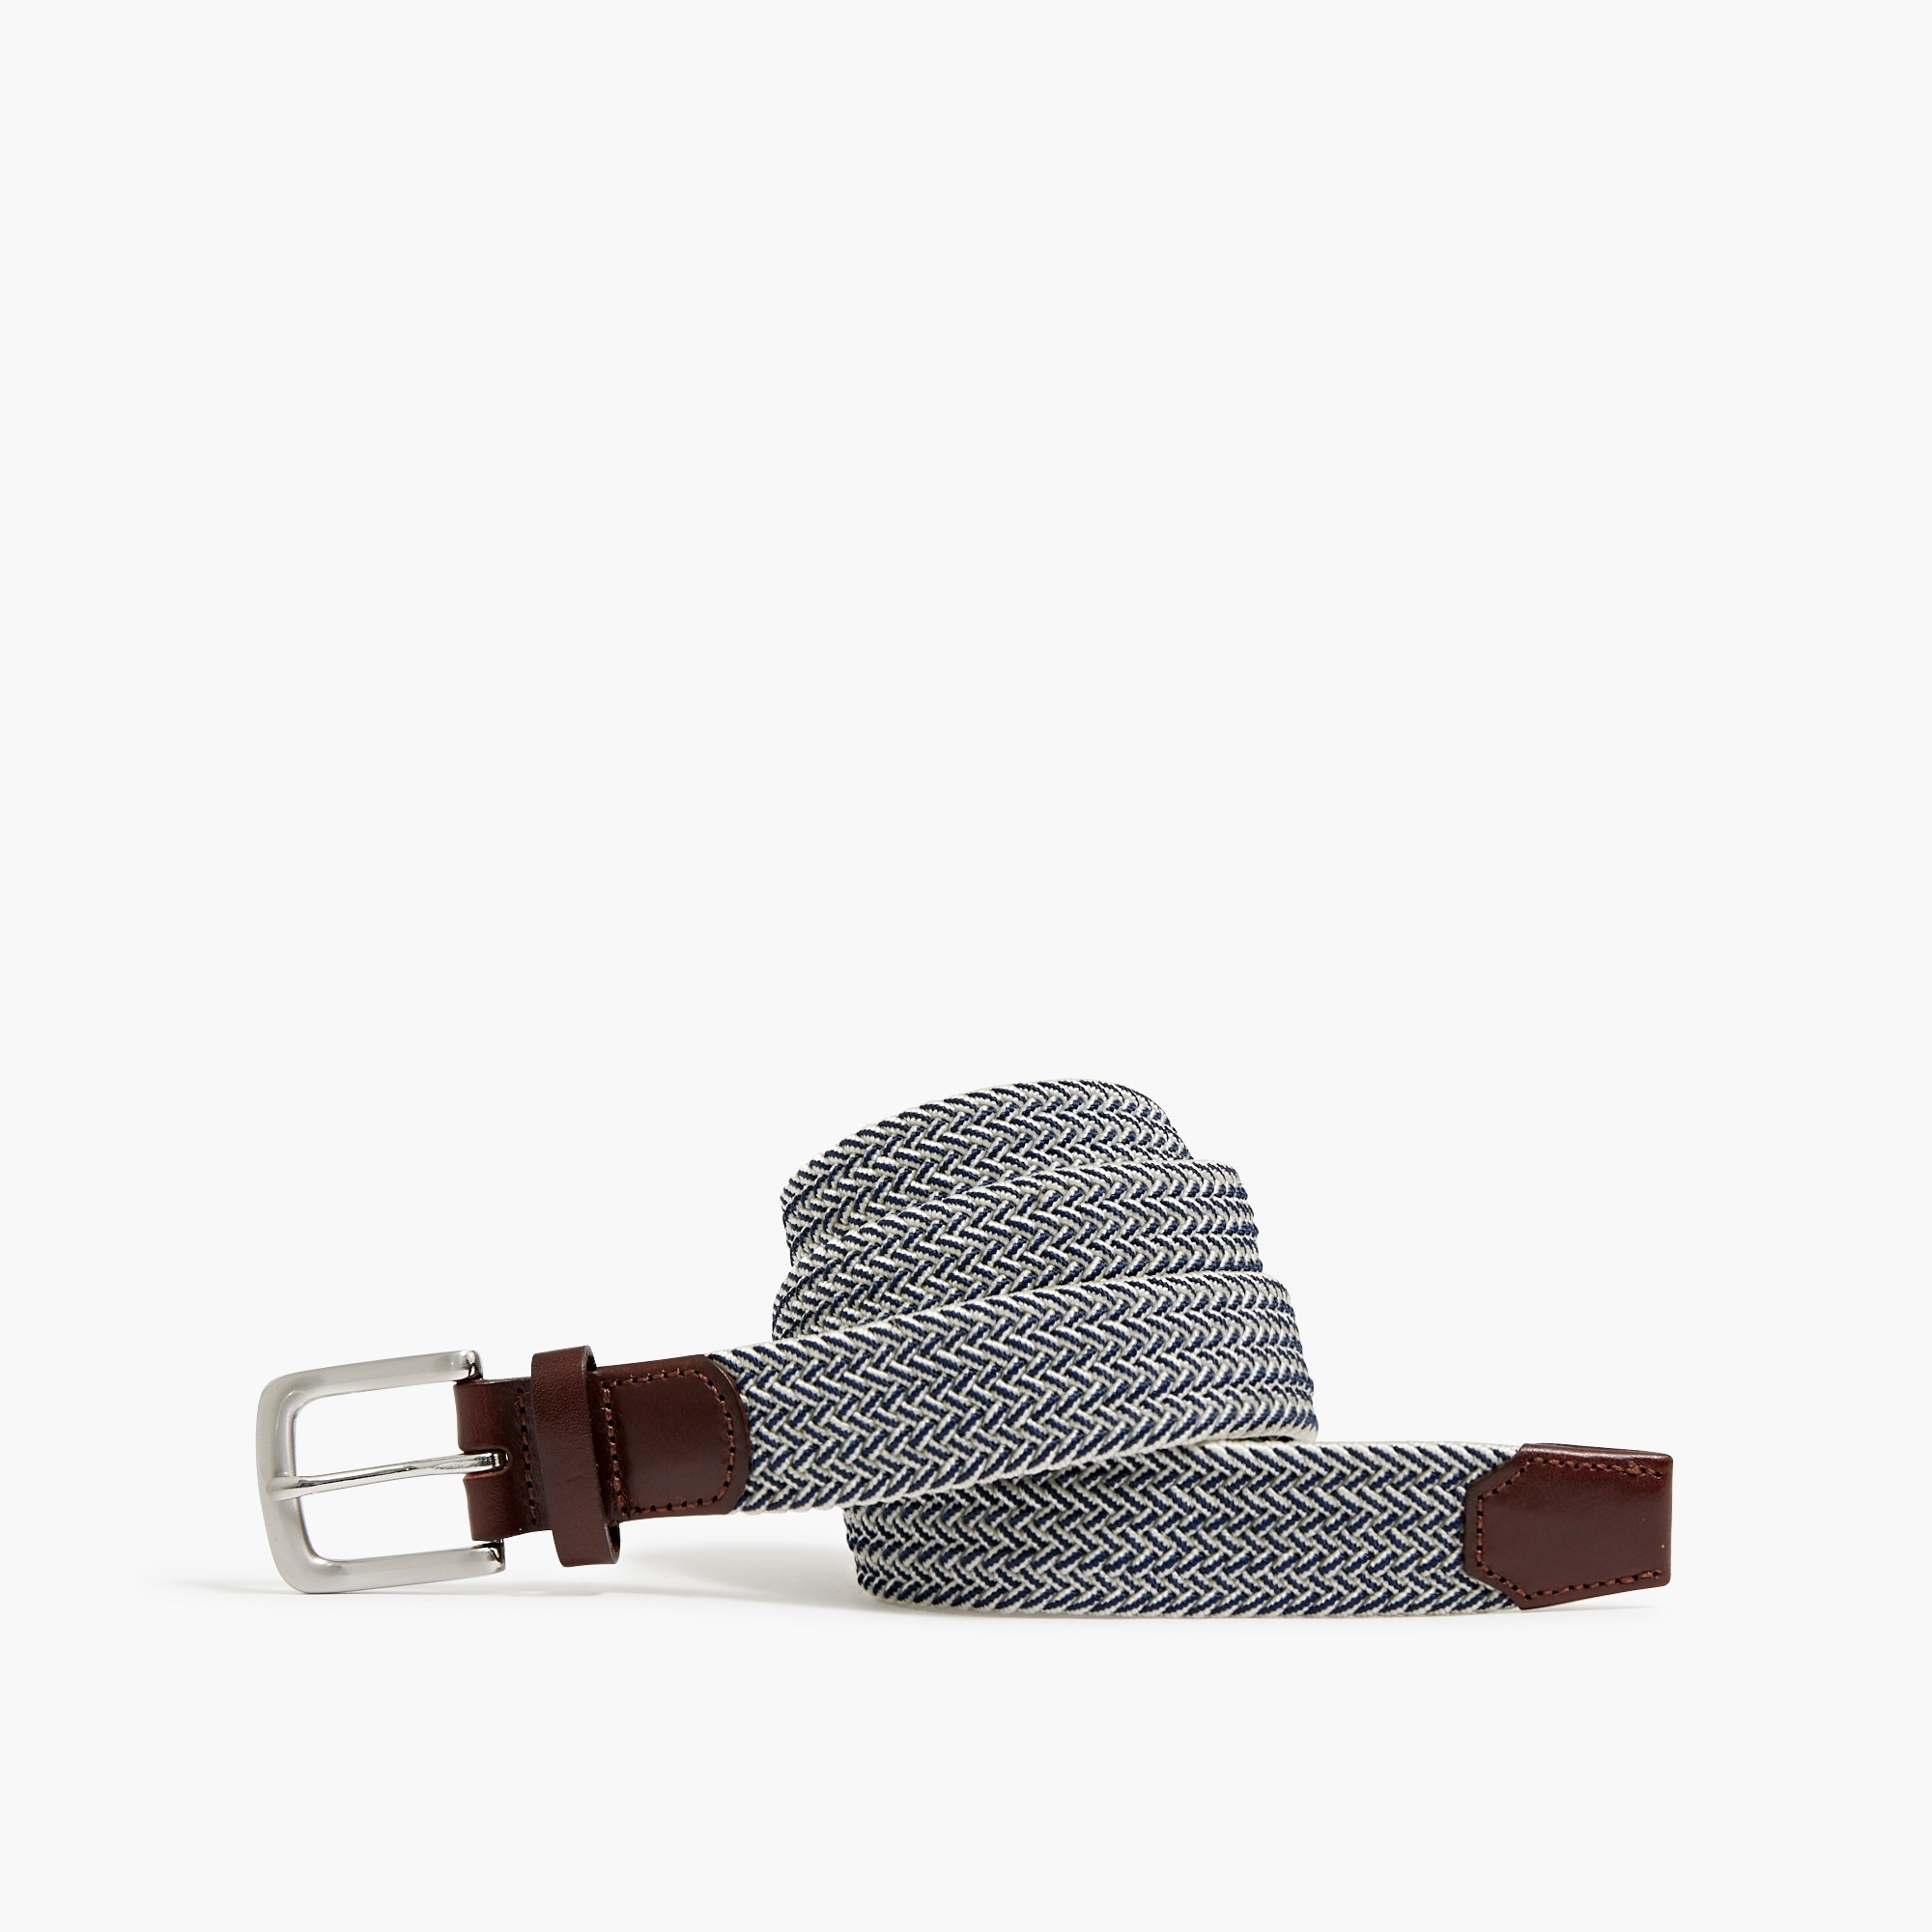 Jcrew Rope belt